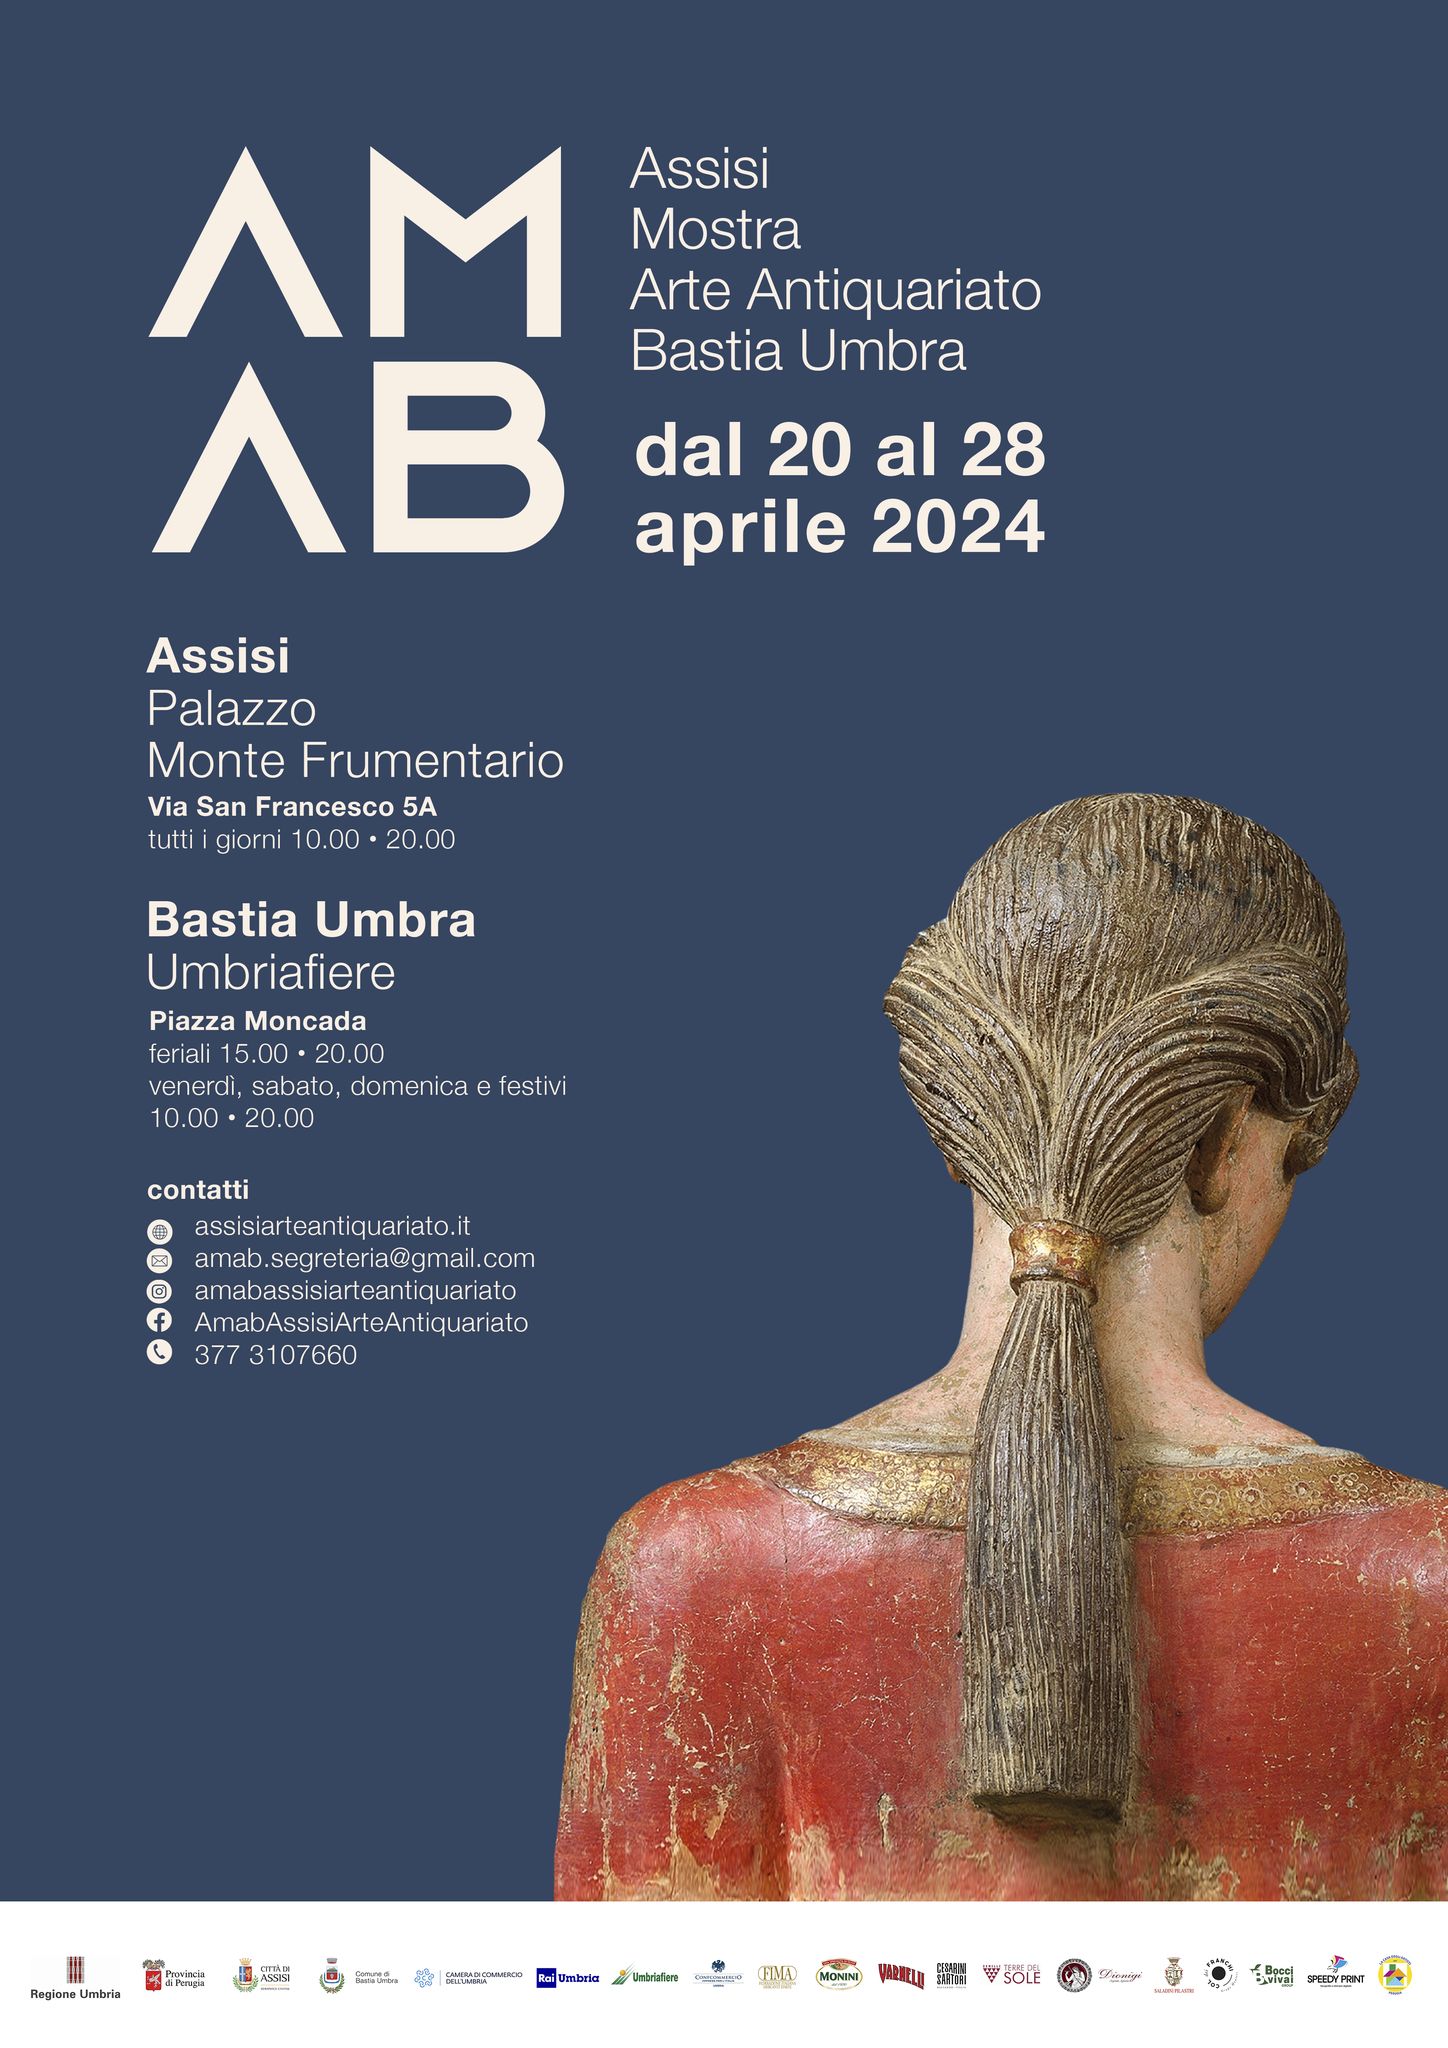 AMAB - Assisi Mostra Arte Antiquariato Bastia Umbra